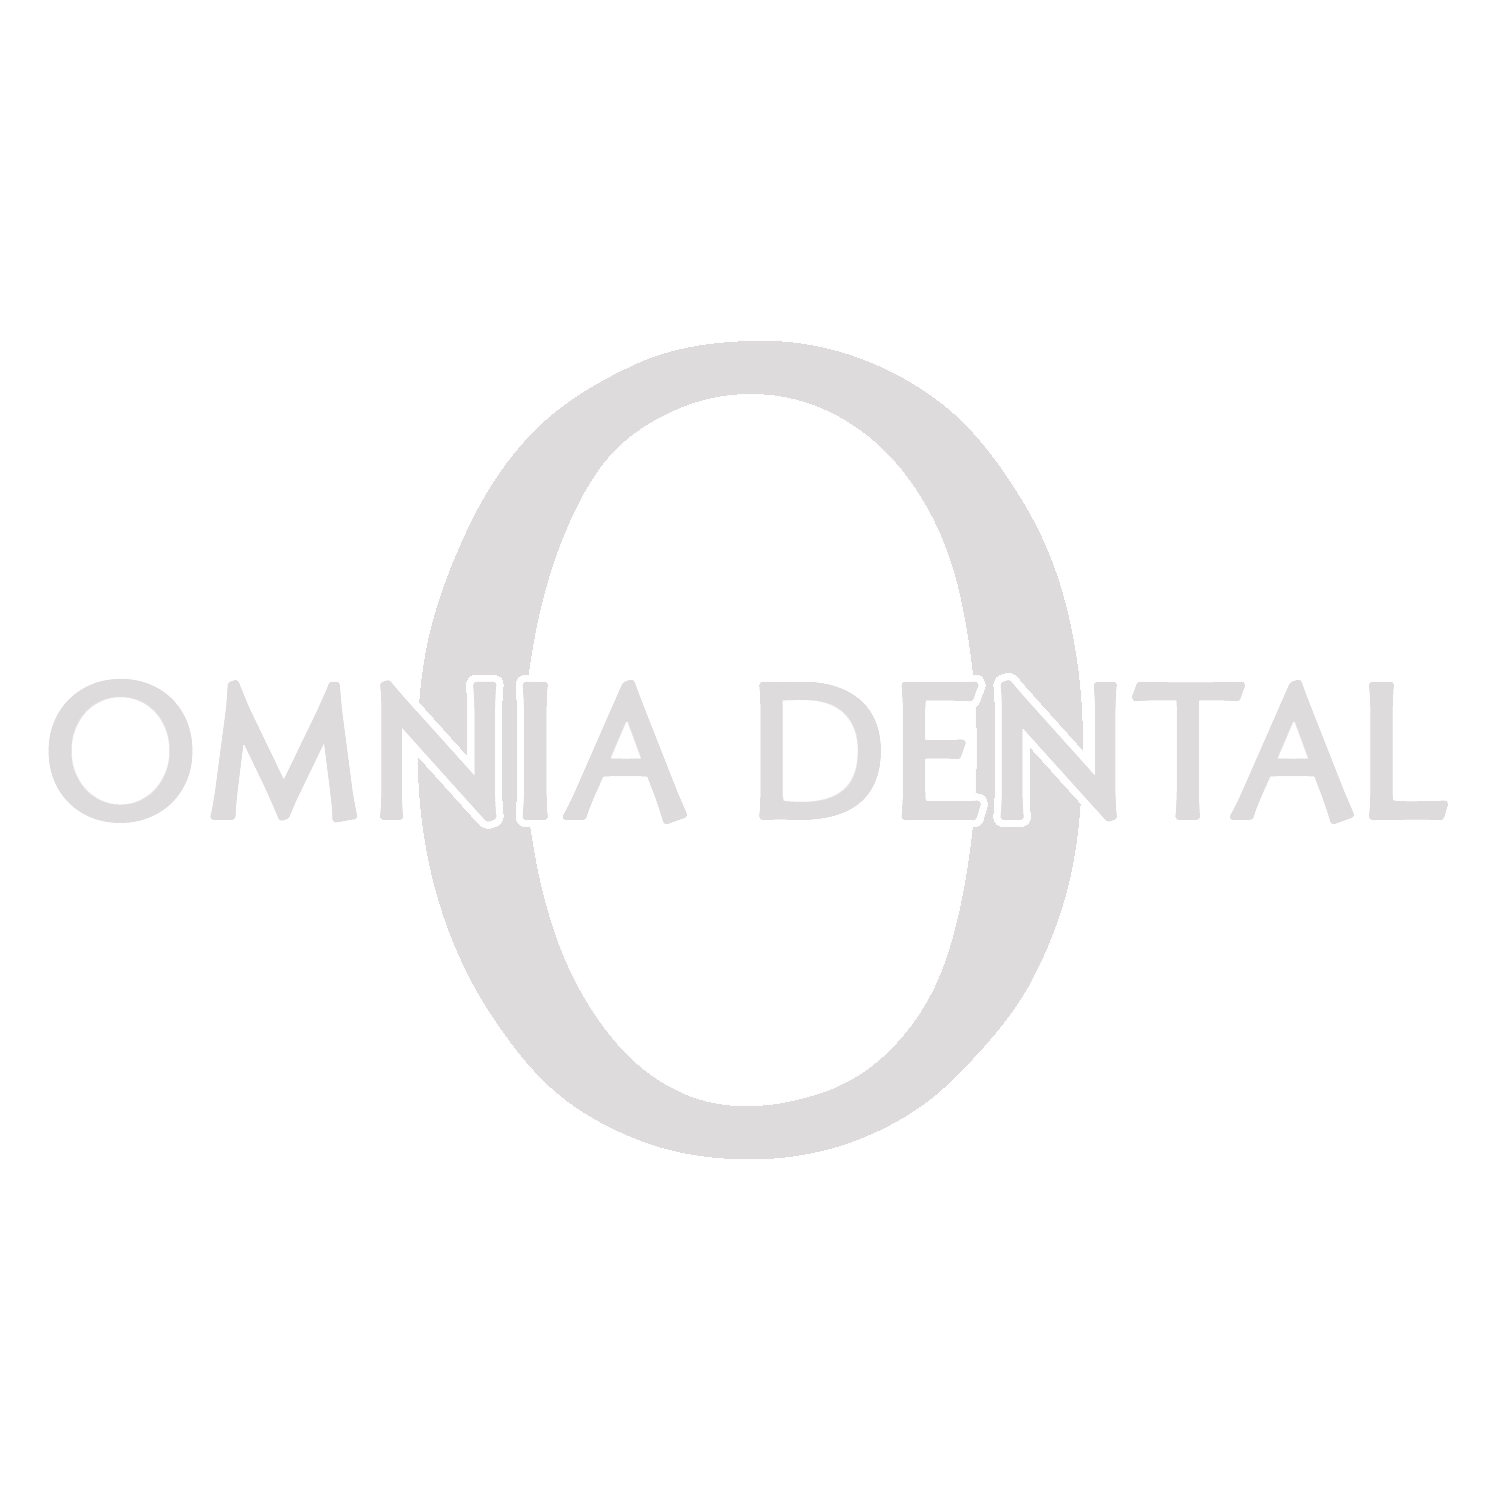 Omnia Dental logo